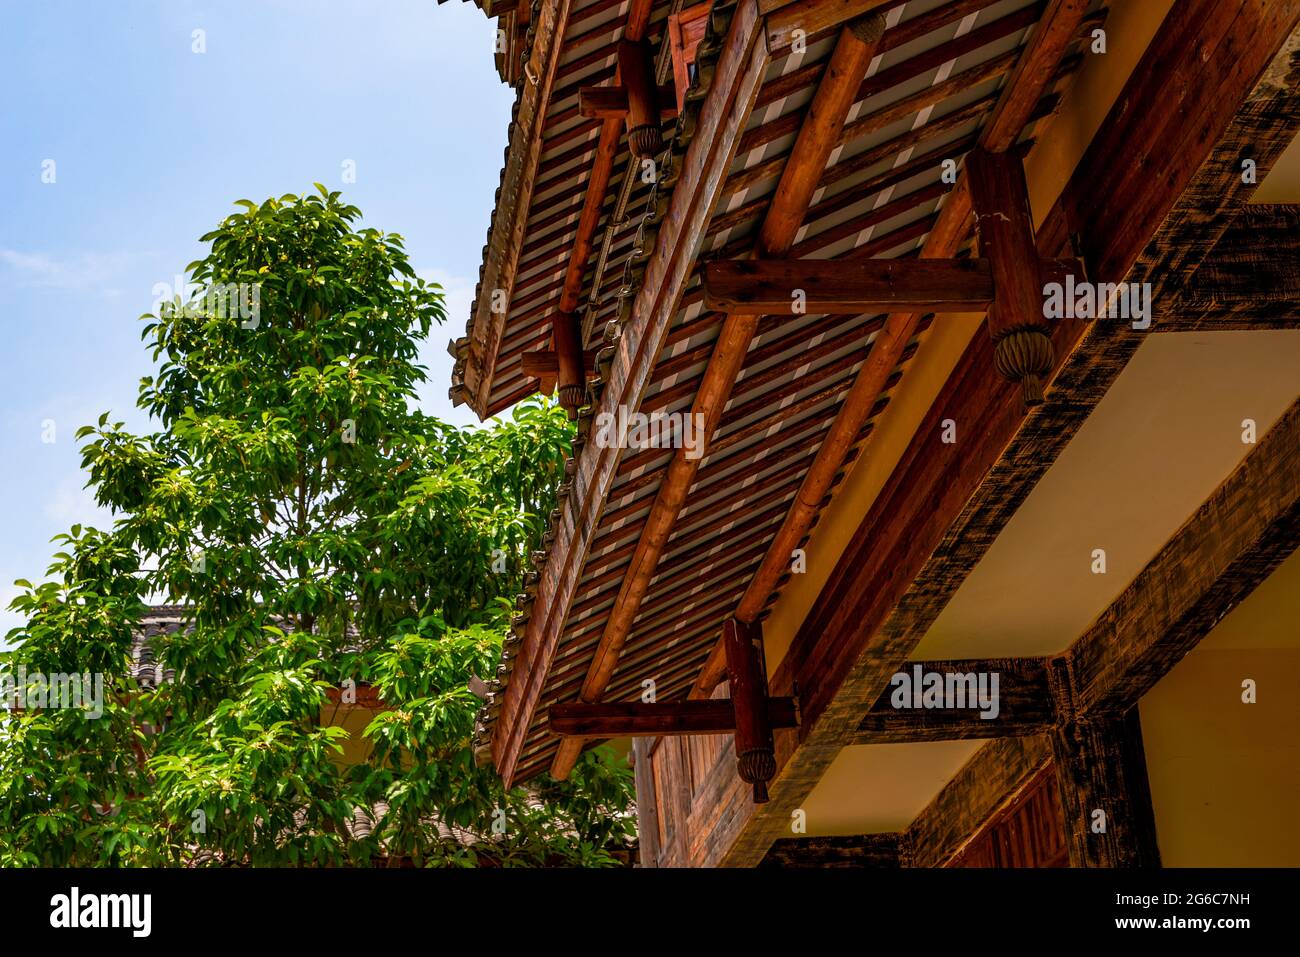 Traditionelle chinesische Retro-Holzhausgebäude, Türmchen Stockfoto